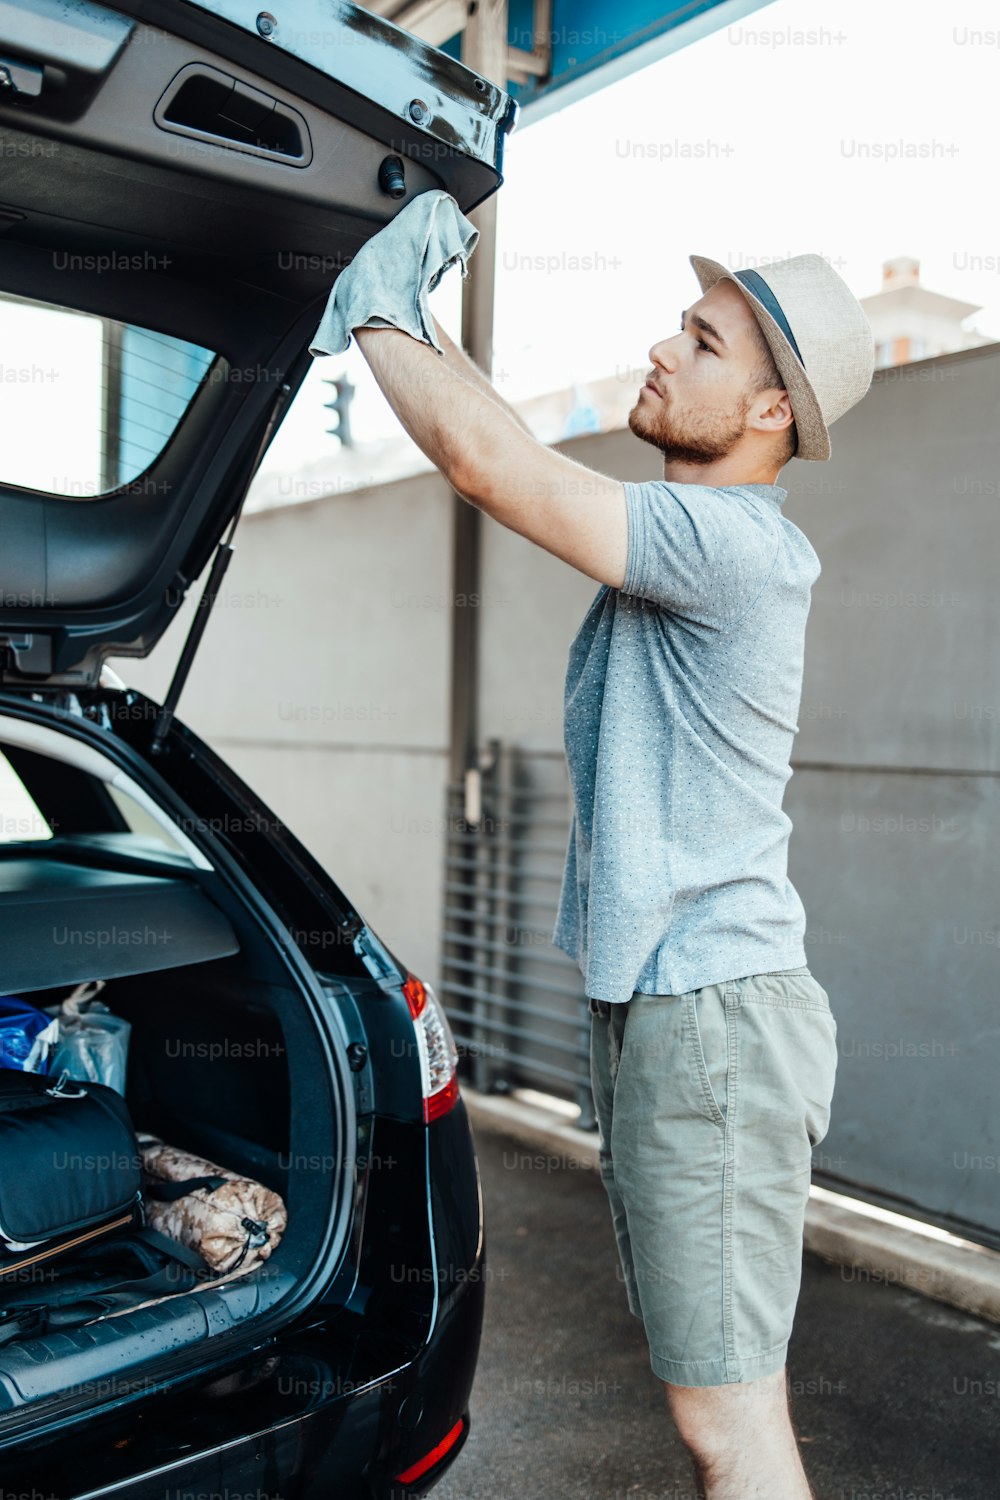 걸레, 자동차 디테일링(또는 발렛) 개념으로 자동차를 청소하는 모자를 쓴 젊은 잘생긴 남자.